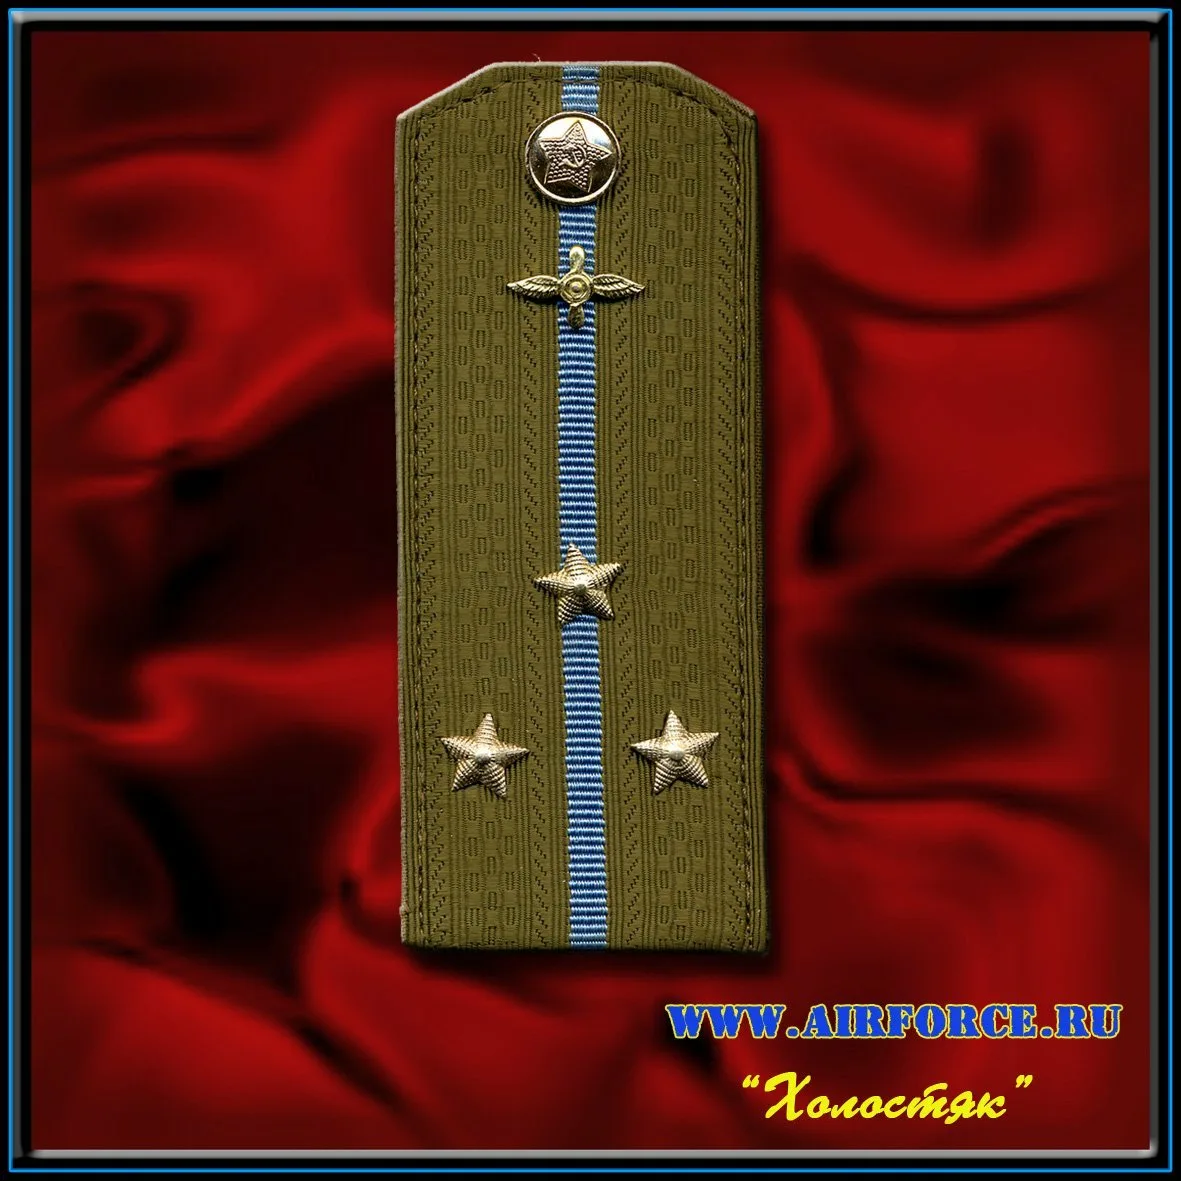 Поздравление с получением звания подполковник мужчине